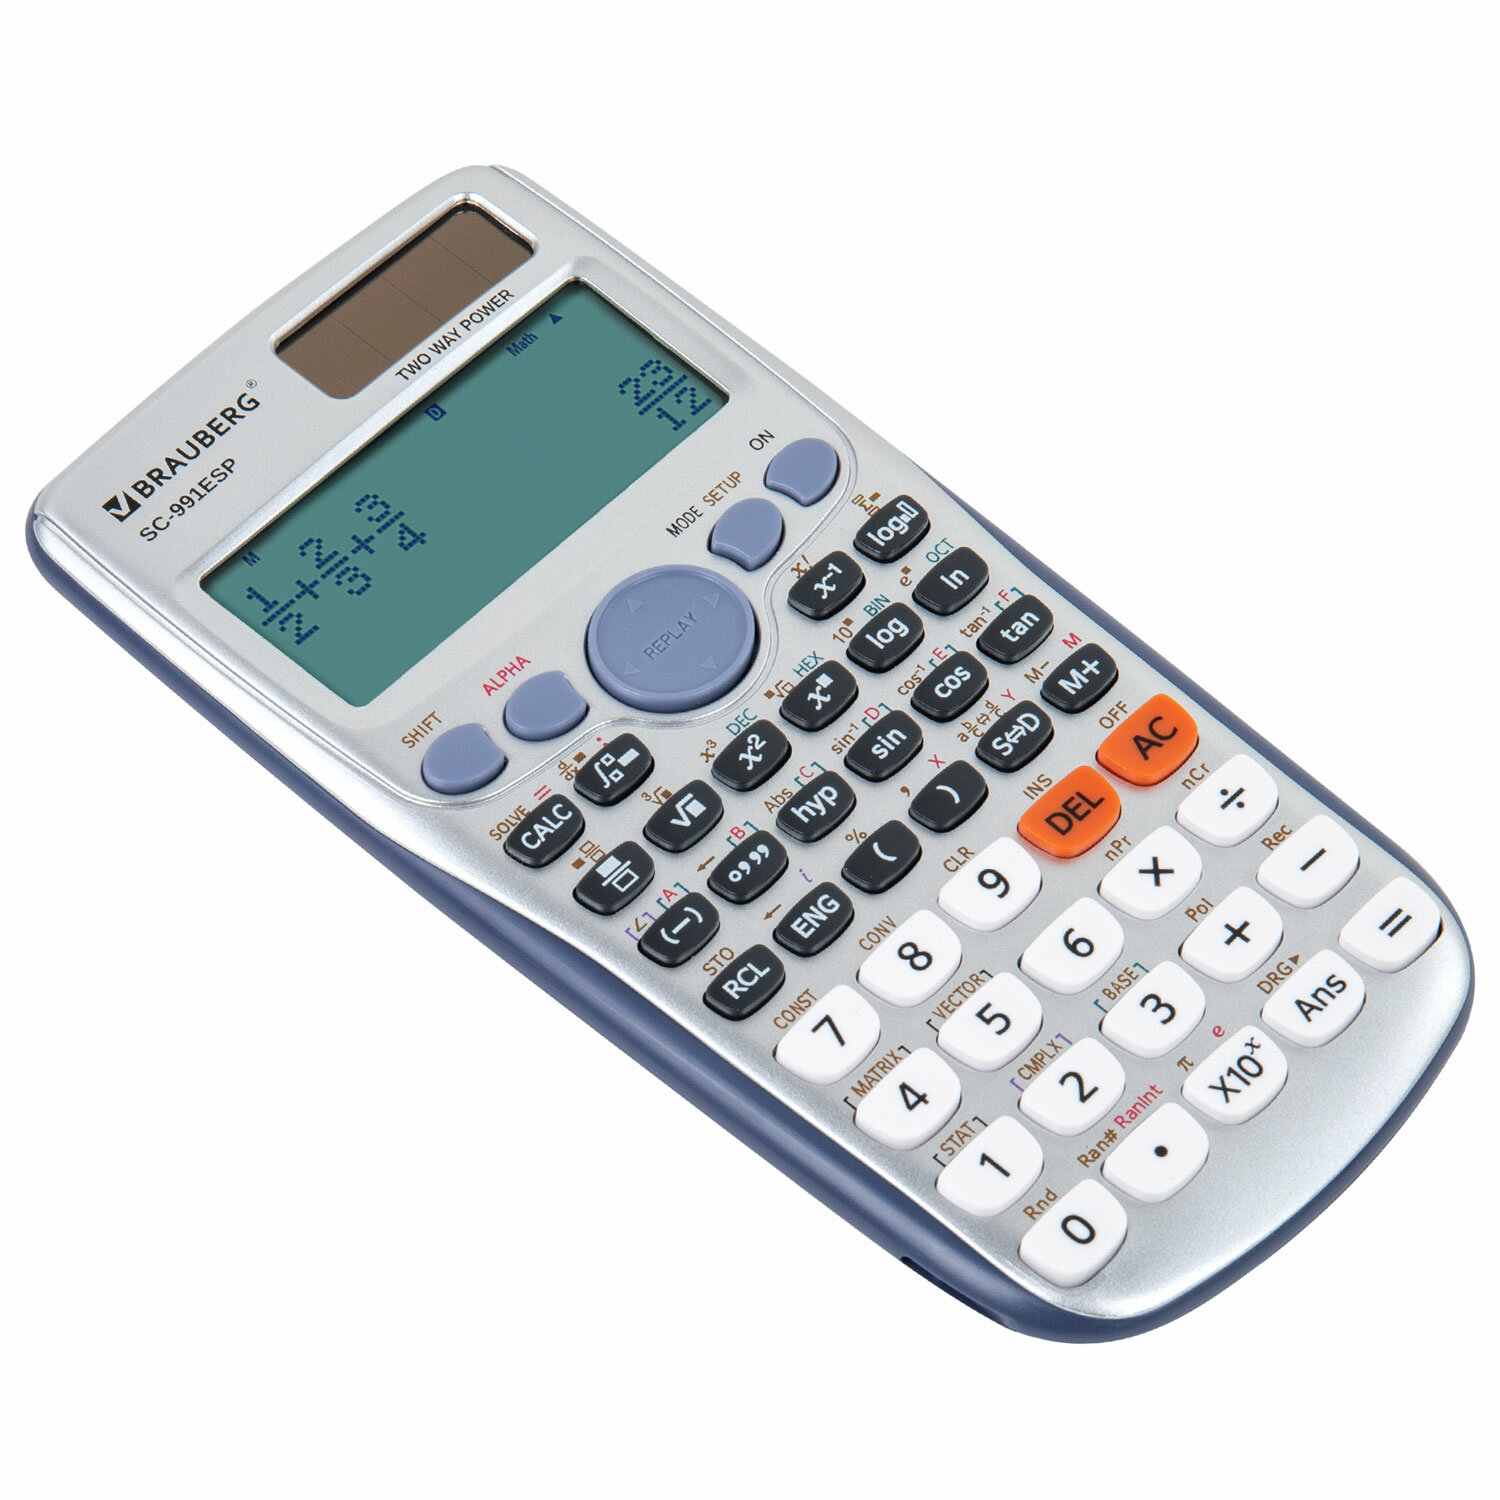 картинка Калькулятор инженерный, 12 разрядов, 16,5*8,4 см, двойное питание, 417 функций, "SC-991ESP", BRAUBERG, 271725 от магазина Альфанит в Кунгуре